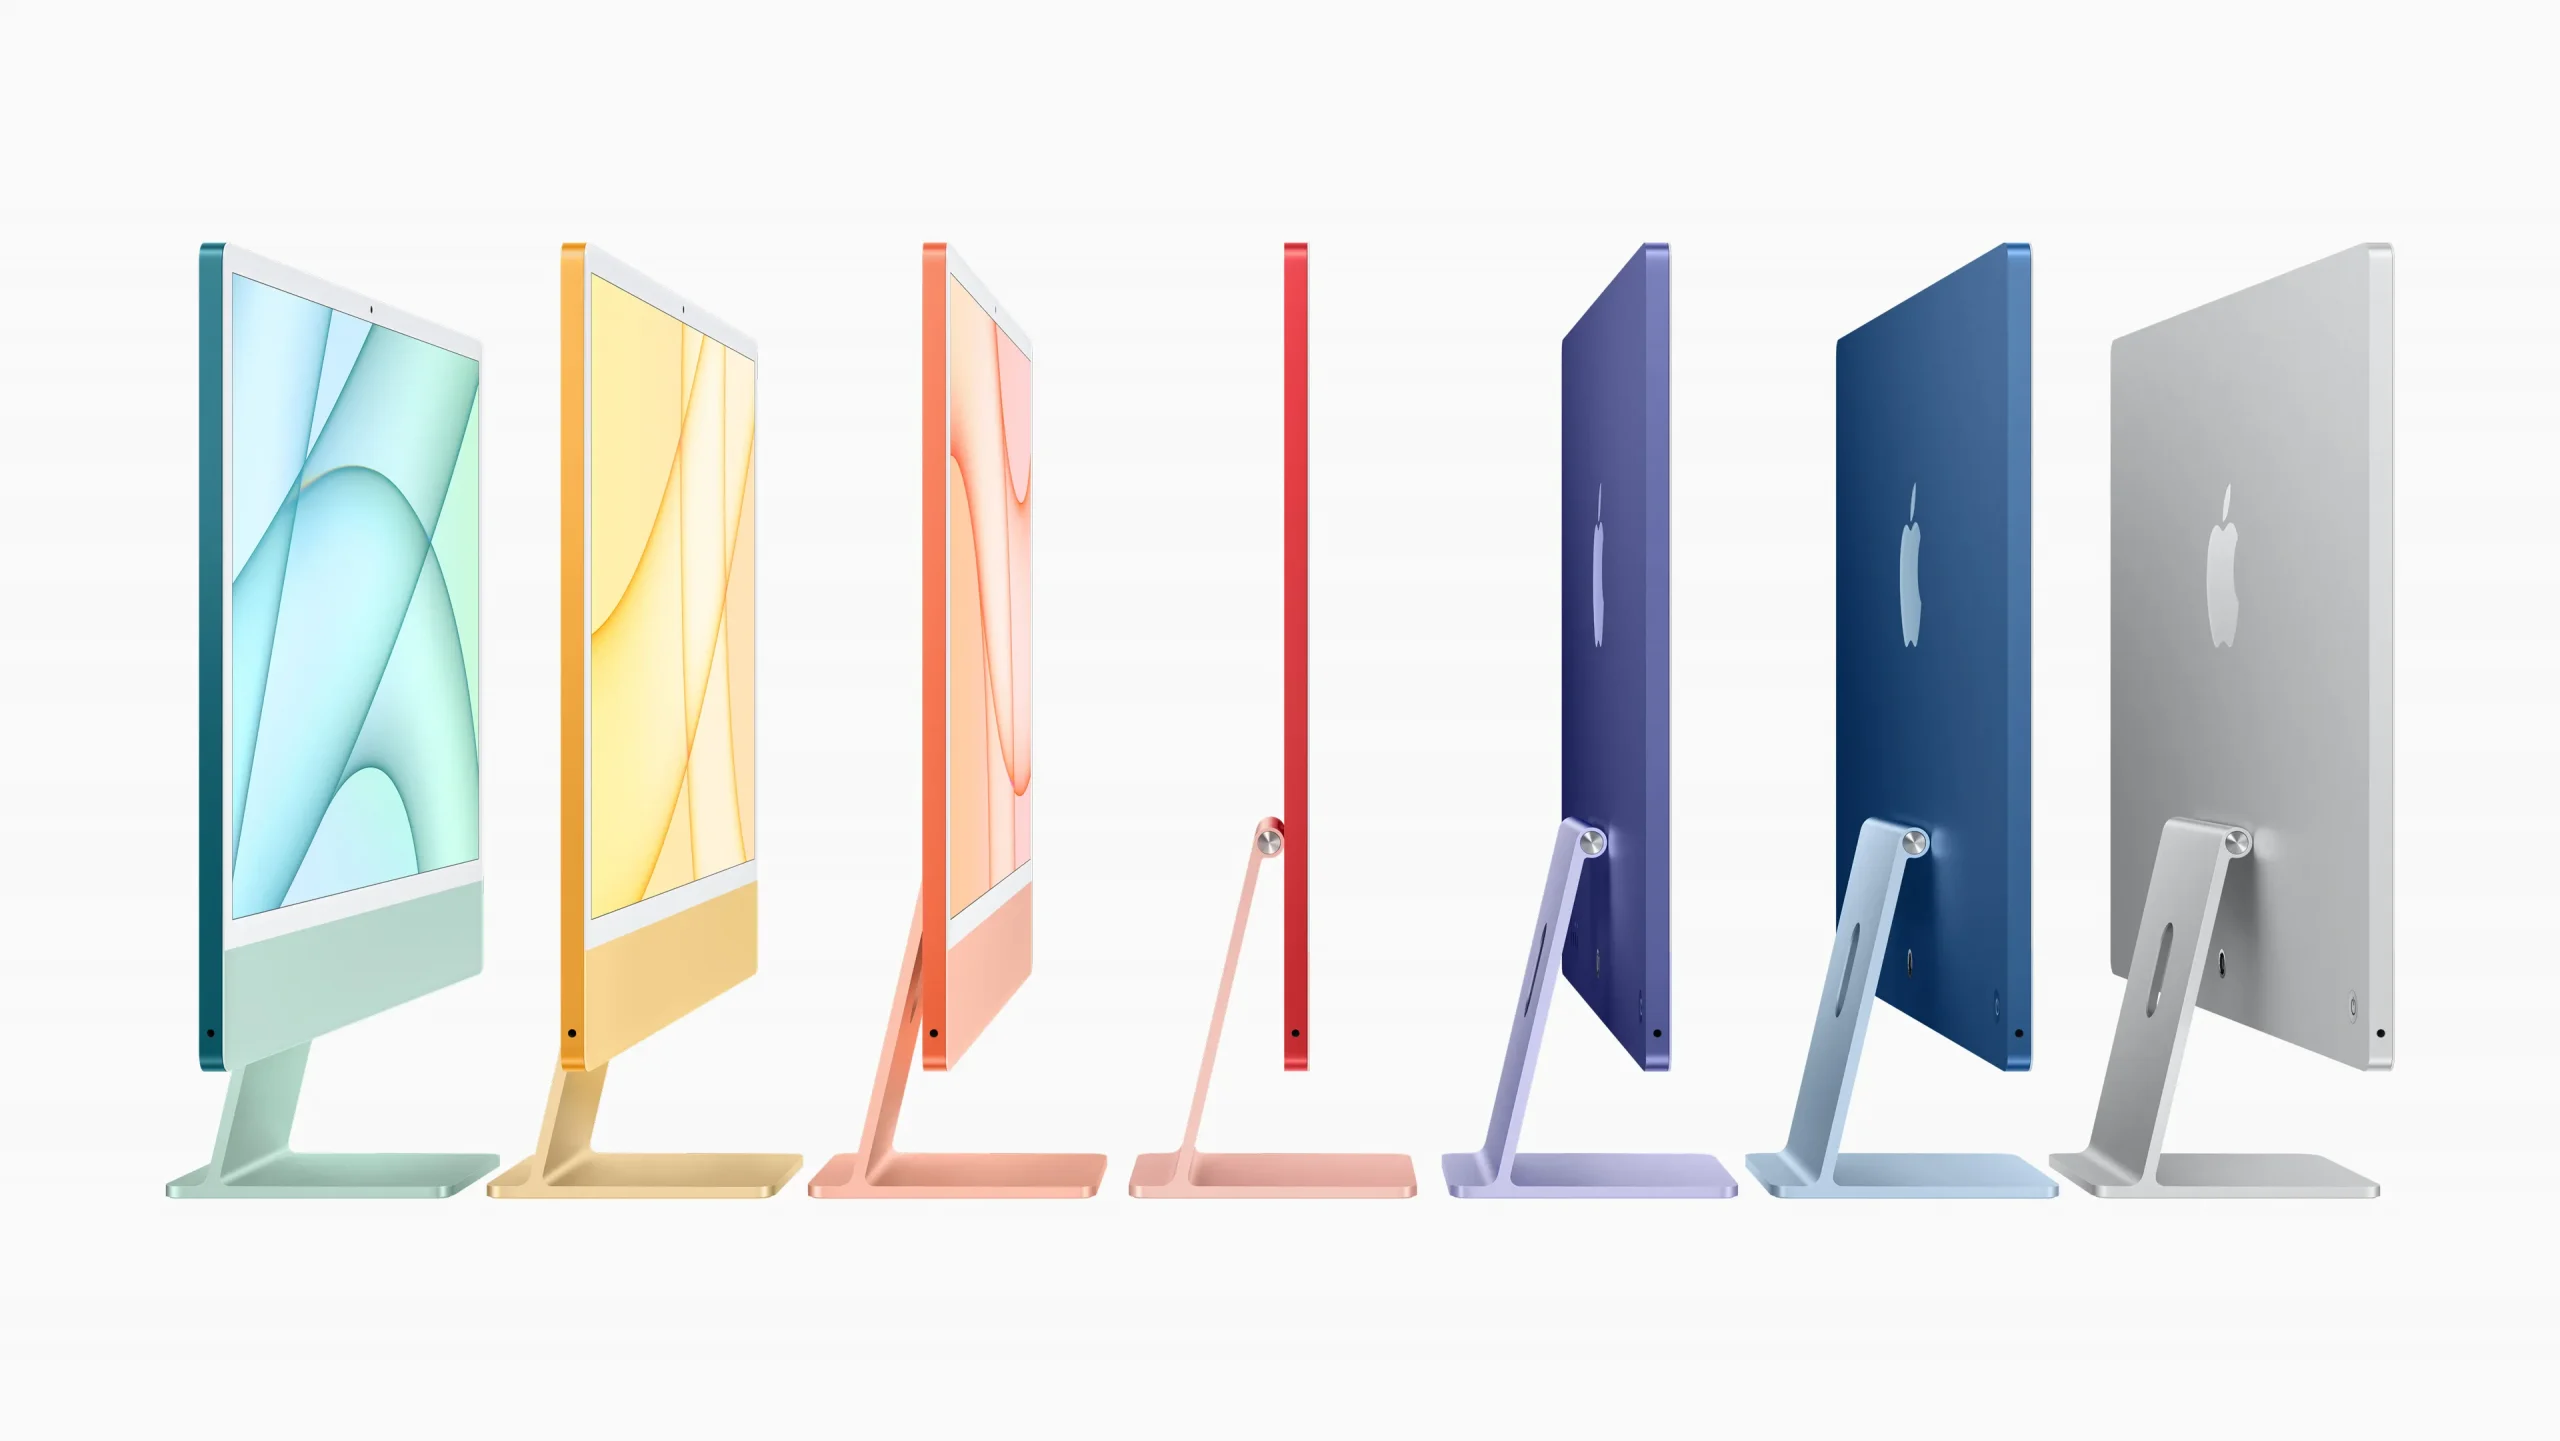 Marketingbild, das die Farben des M1 iMac zeigt